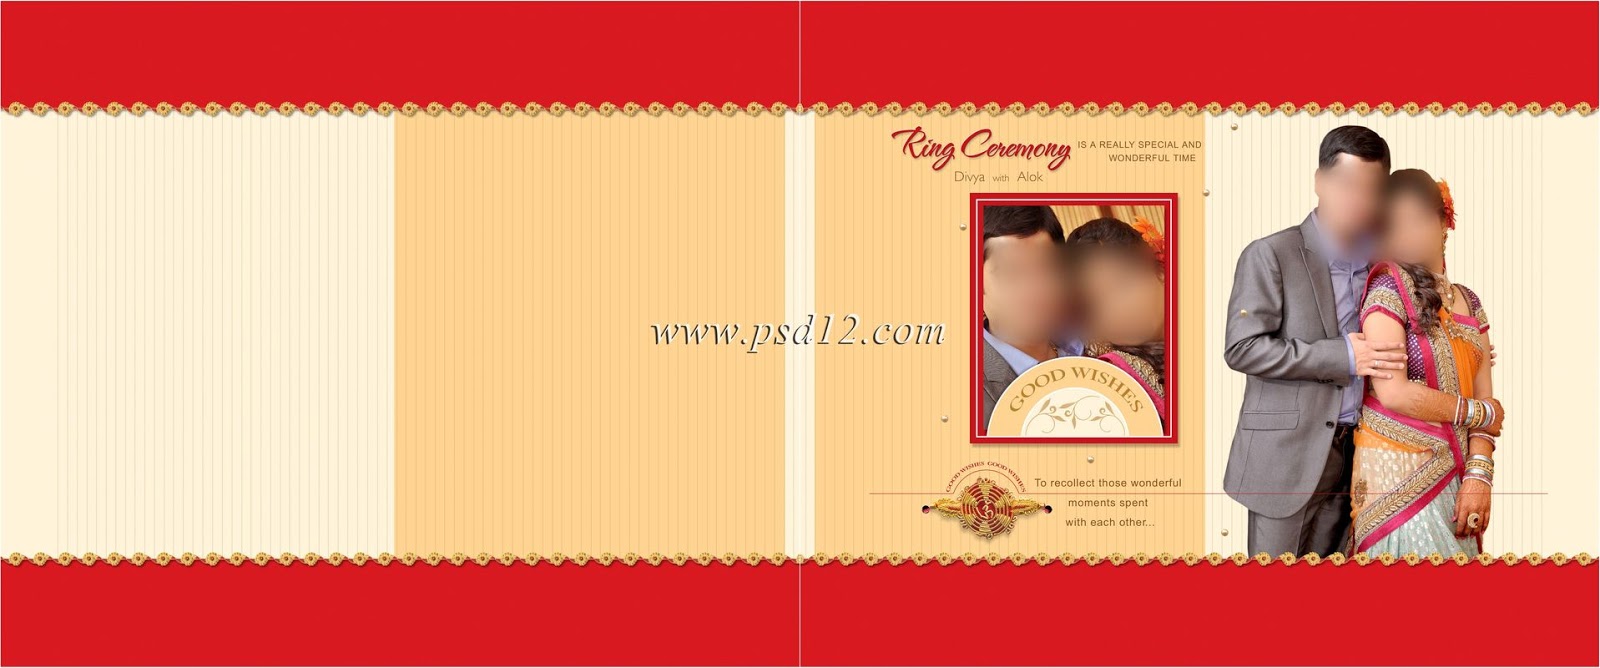 Wedding Album Design by Wedding Album Designer | Wedding album design, Album  design, Wedding photo album layout